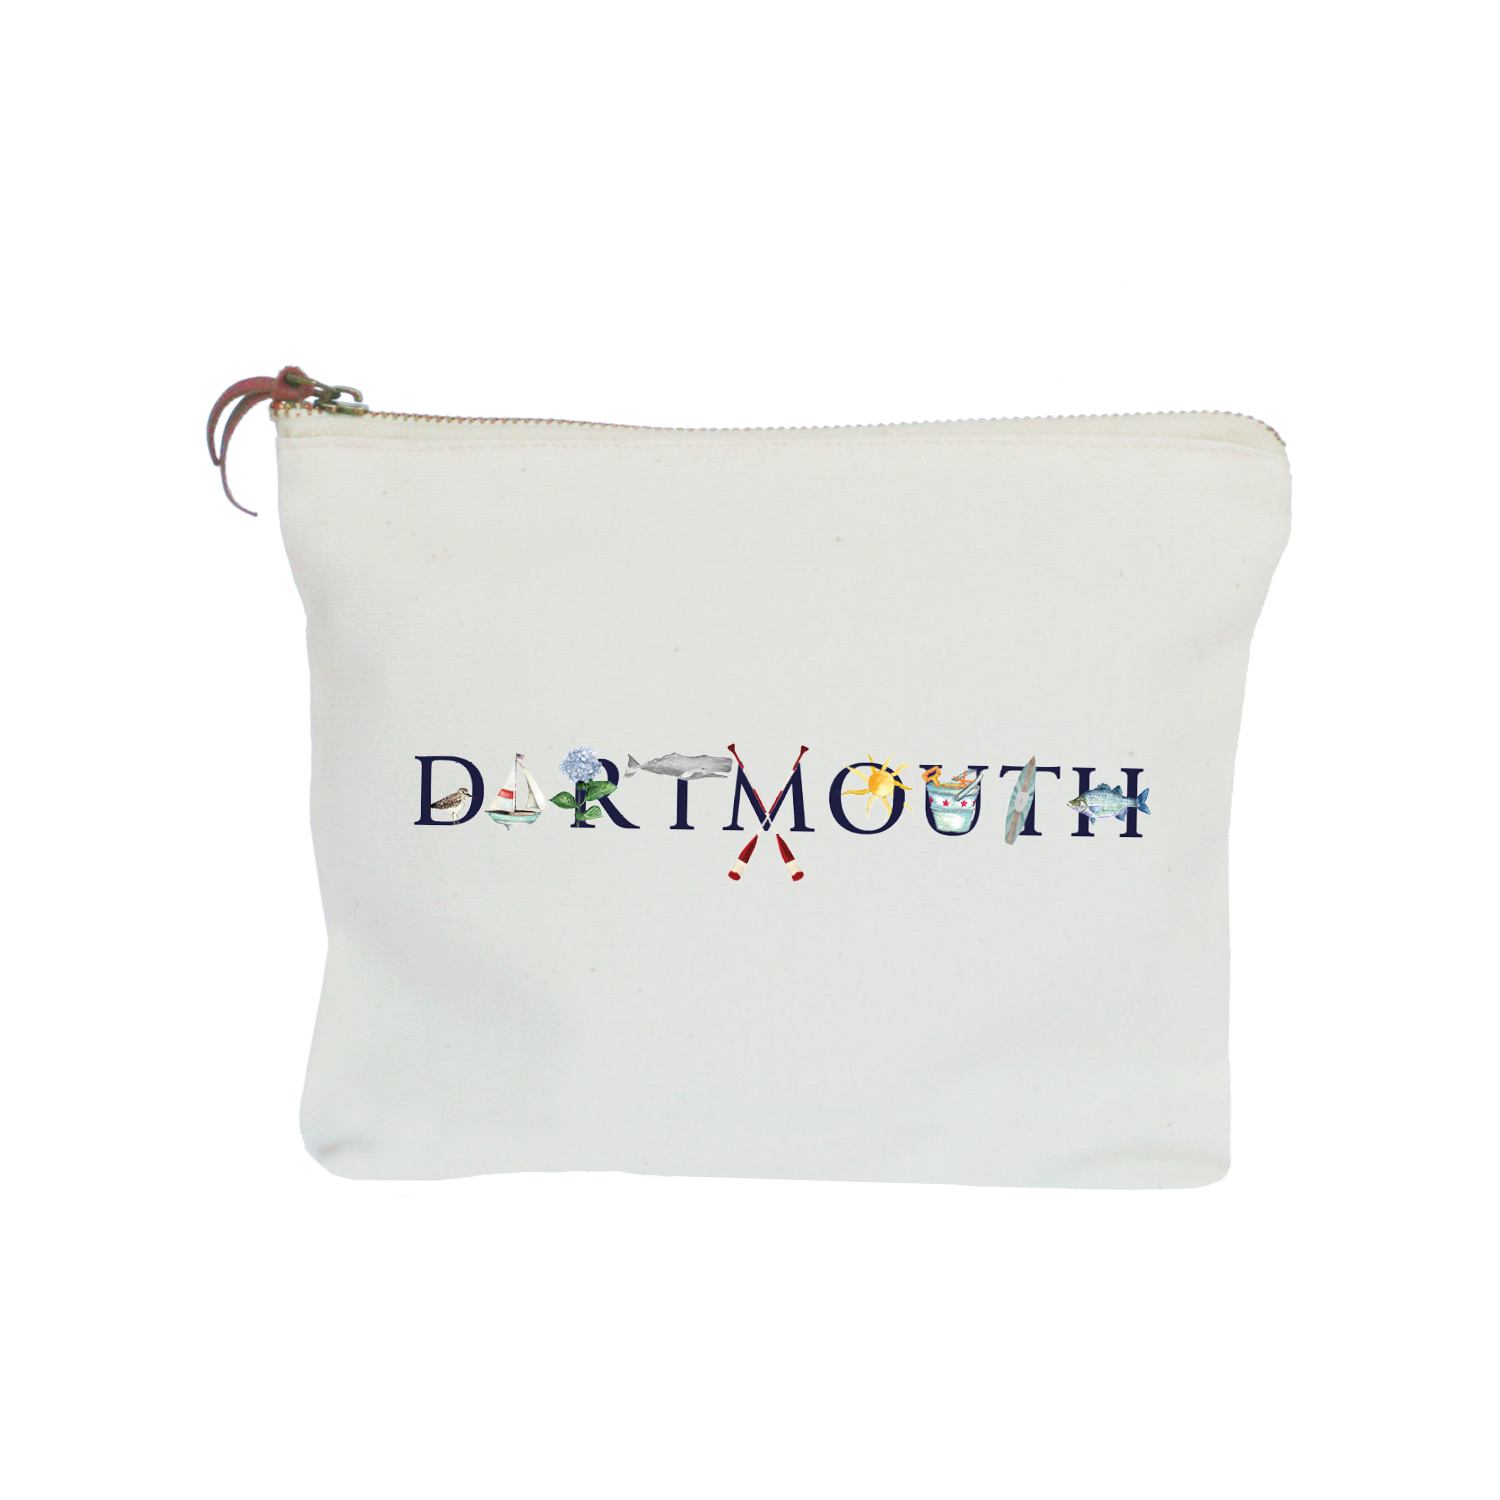 dartmouth zipper pouch